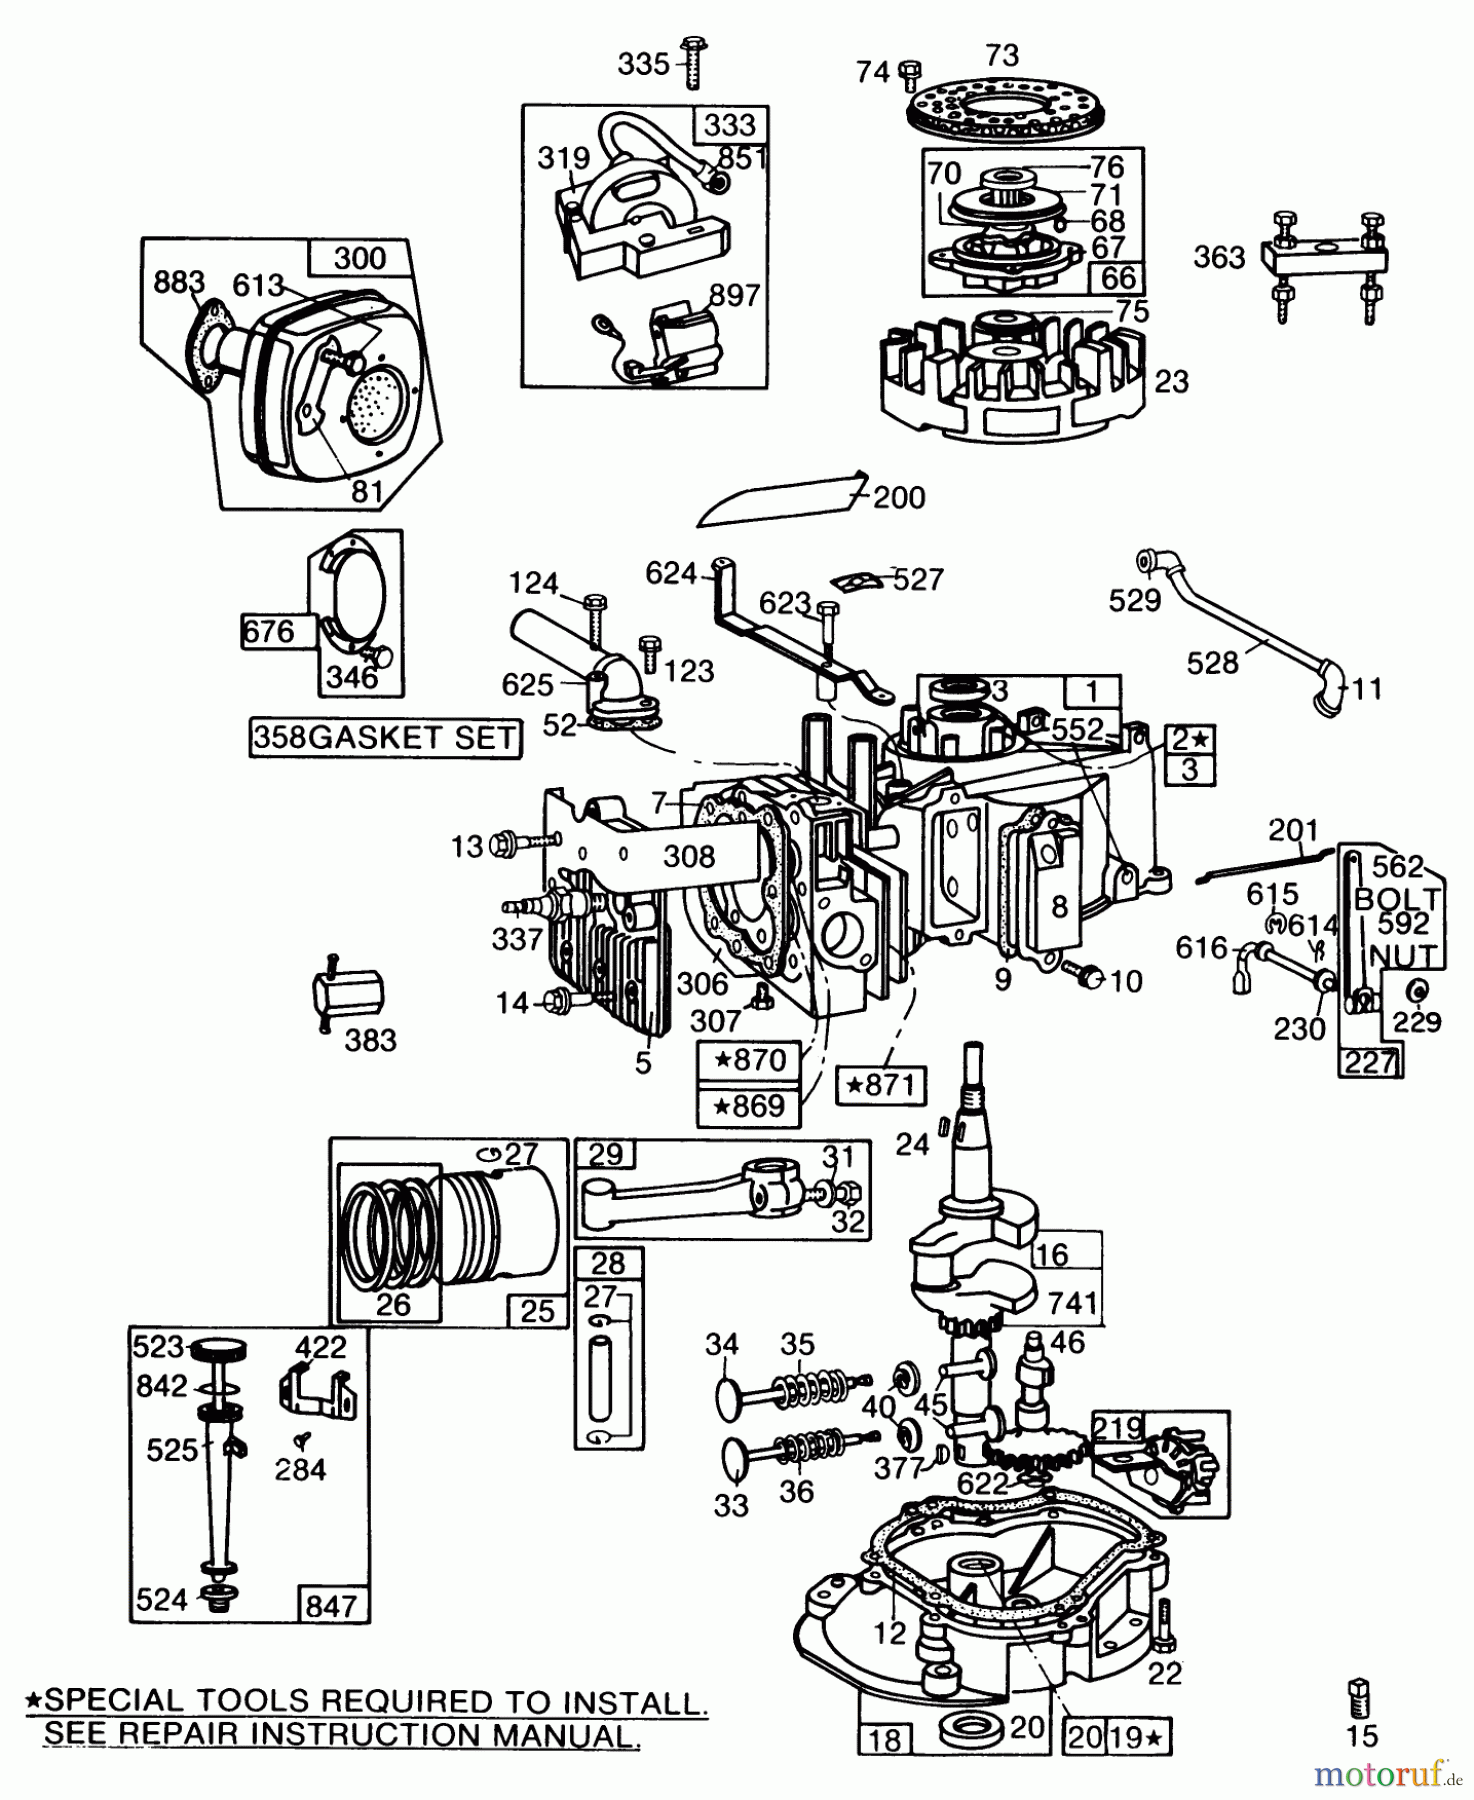  Toro Neu Mowers, Walk-Behind Seite 2 22005 - Toro Lawnmower, 1986 (6000001-6999999) ENGINE BRIGGS & STRATTON MODEL NO. 130902 TYPE 1200-01 #1